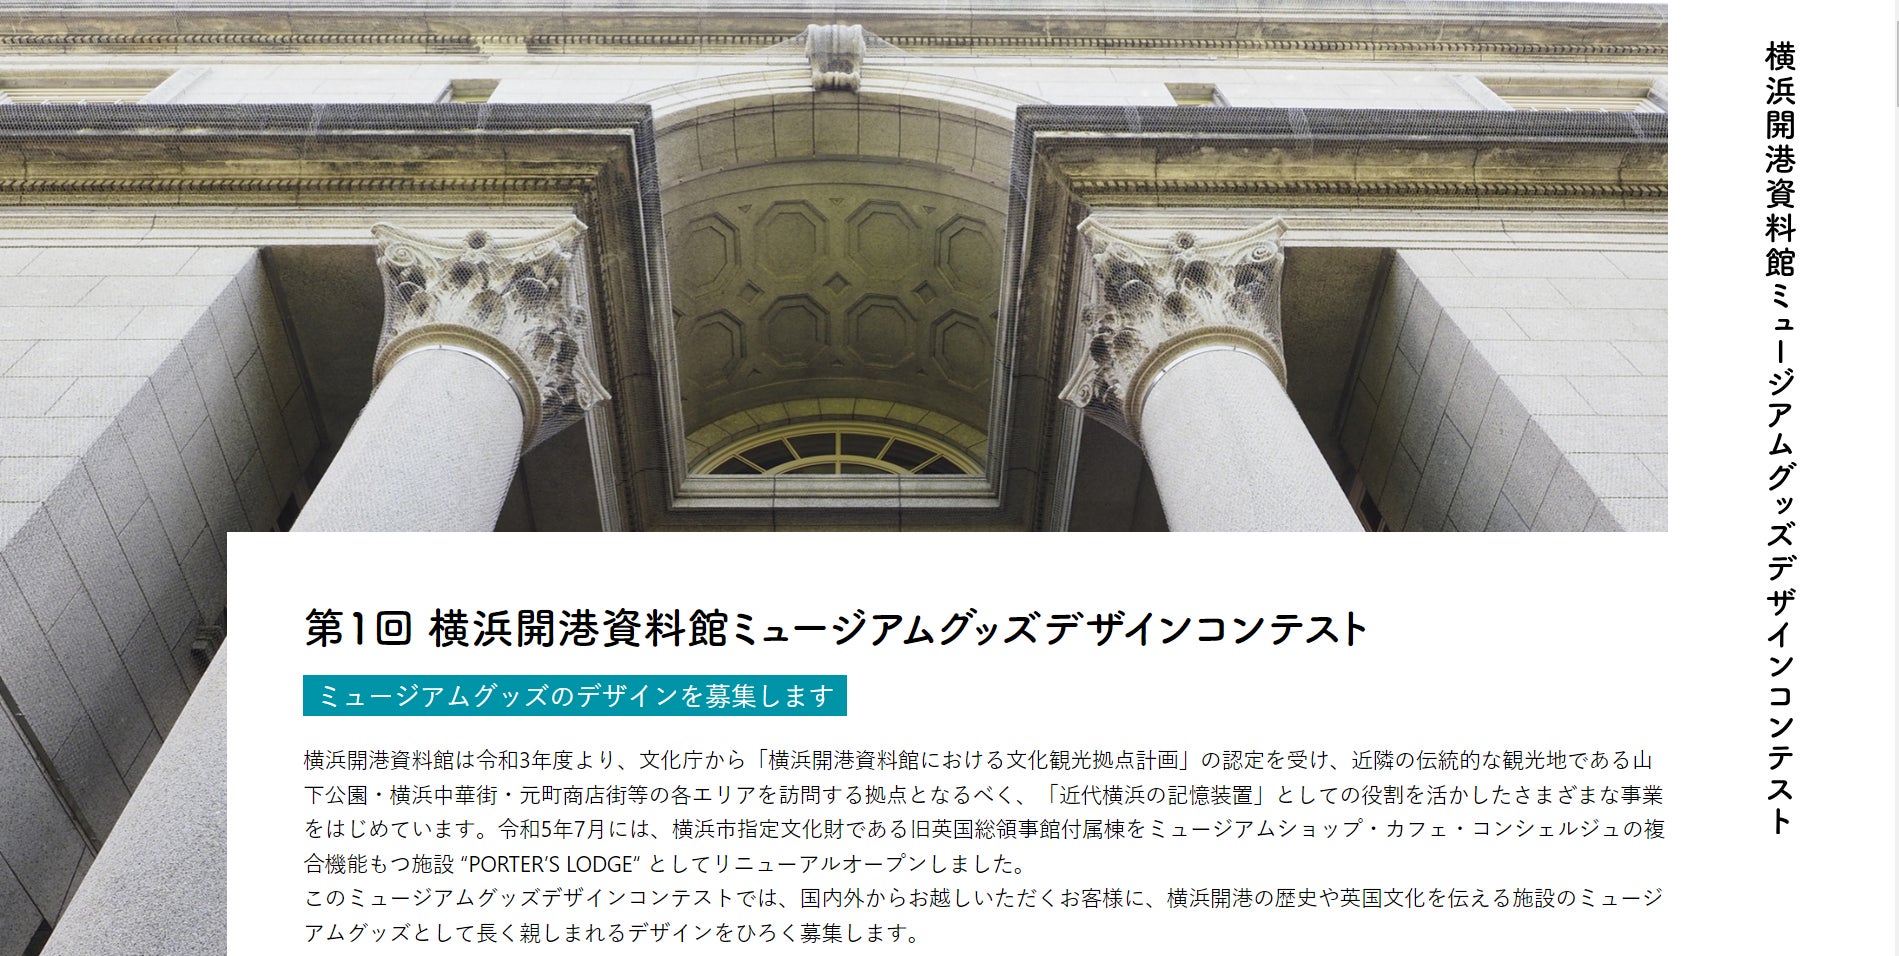 第1回 横浜開港資料館ミュージアムグッズデザインコンテストを開催します！【横浜開港資料館】